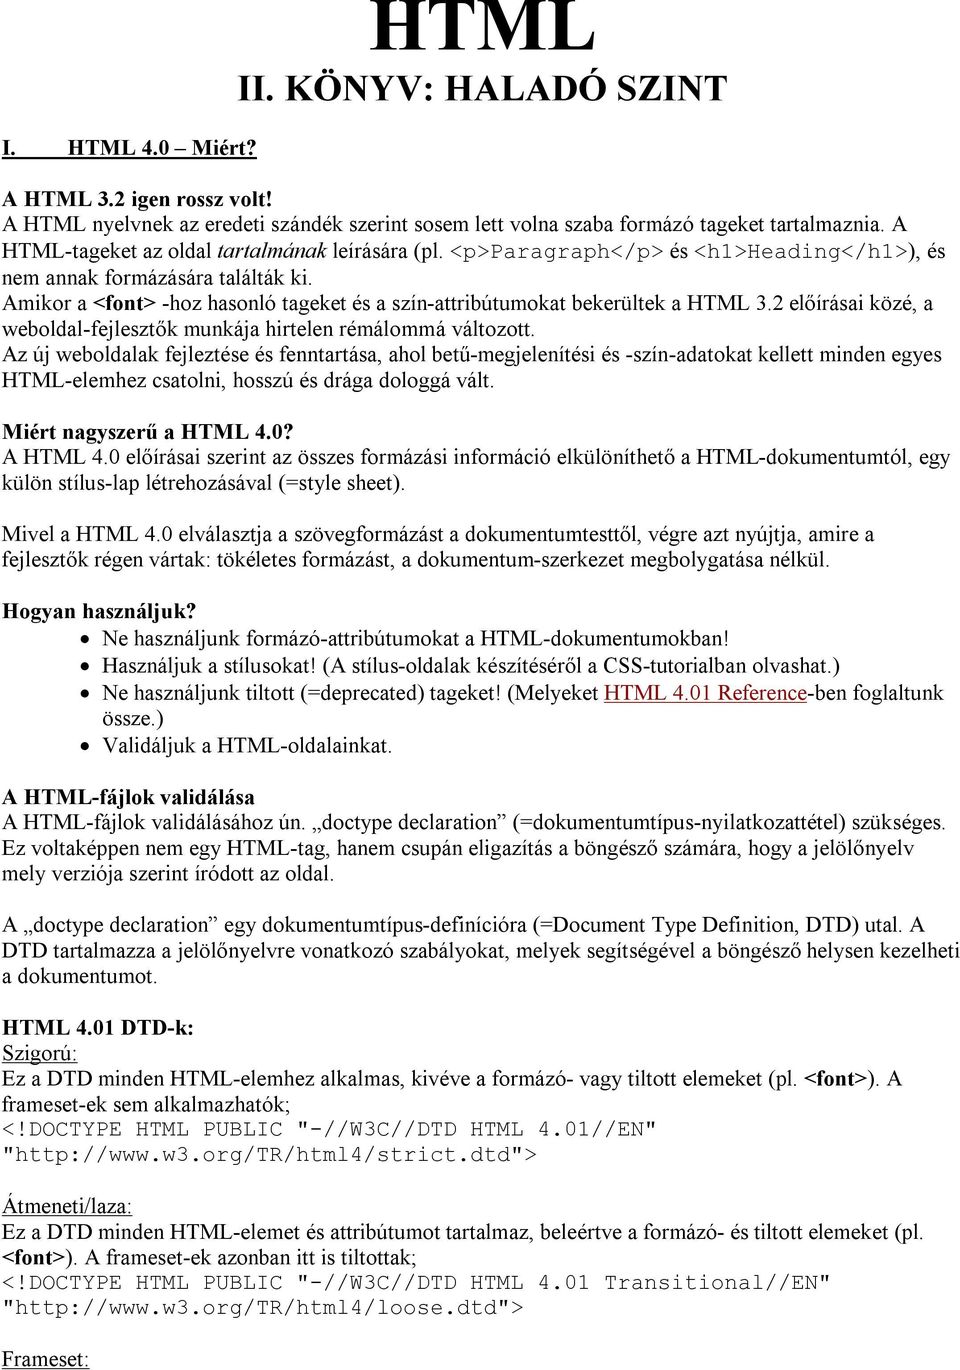 HTML II. KÖNYV: HALADÓ SZINT - PDF Ingyenes letöltés